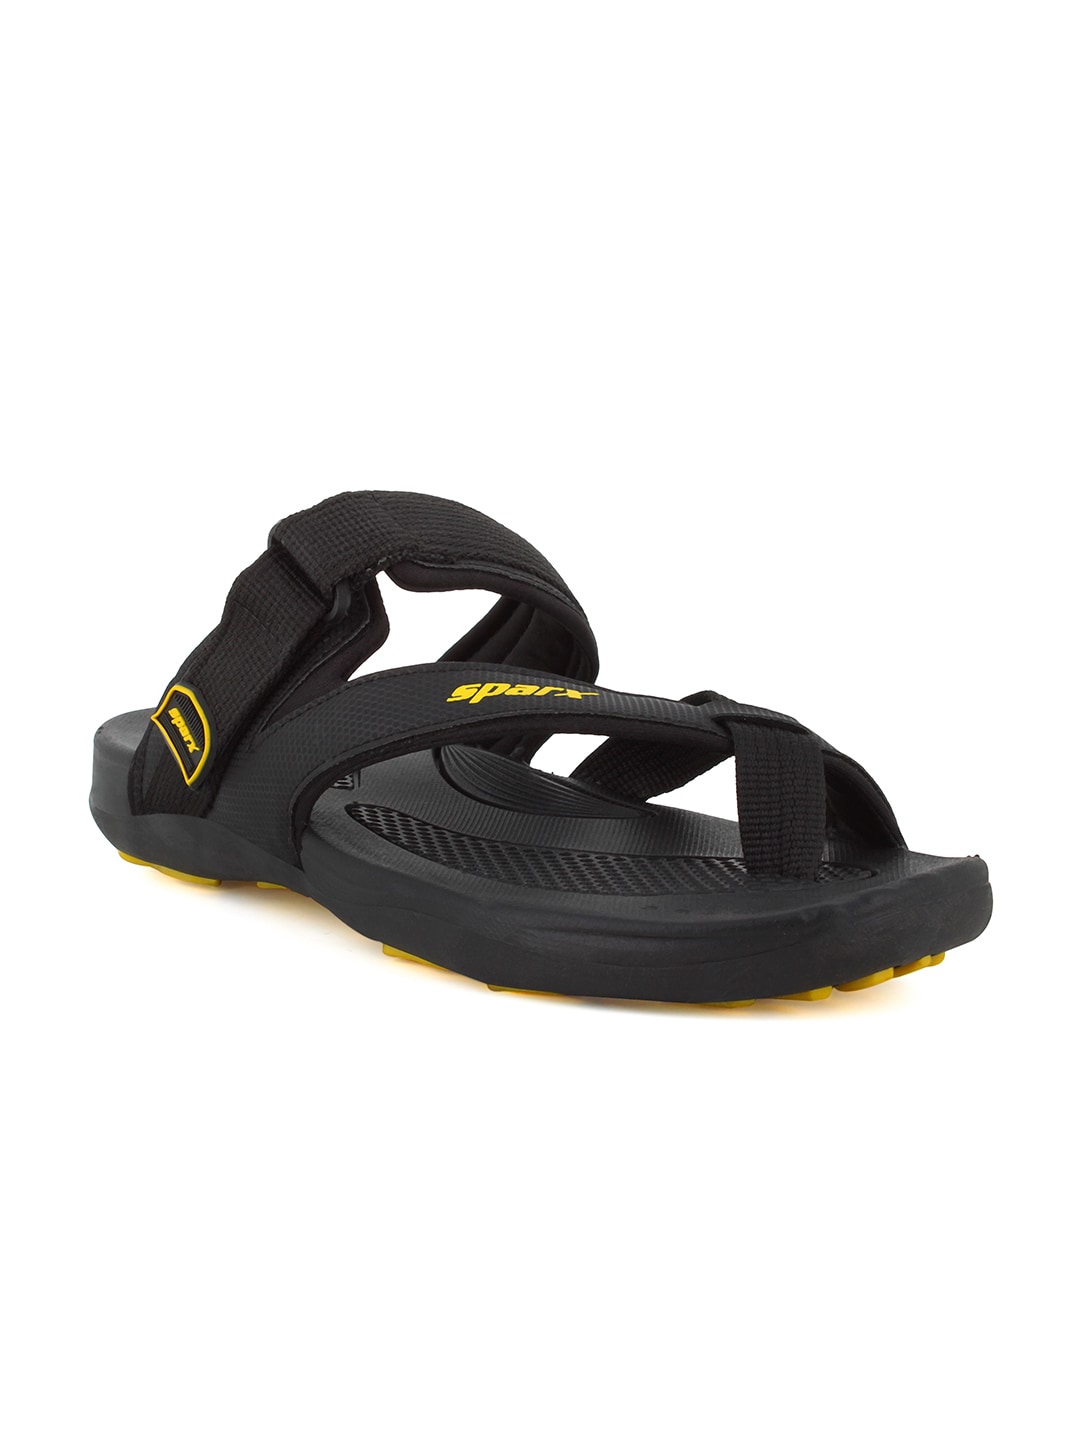 Sparx Men Black & Yellow Comfort Sandals